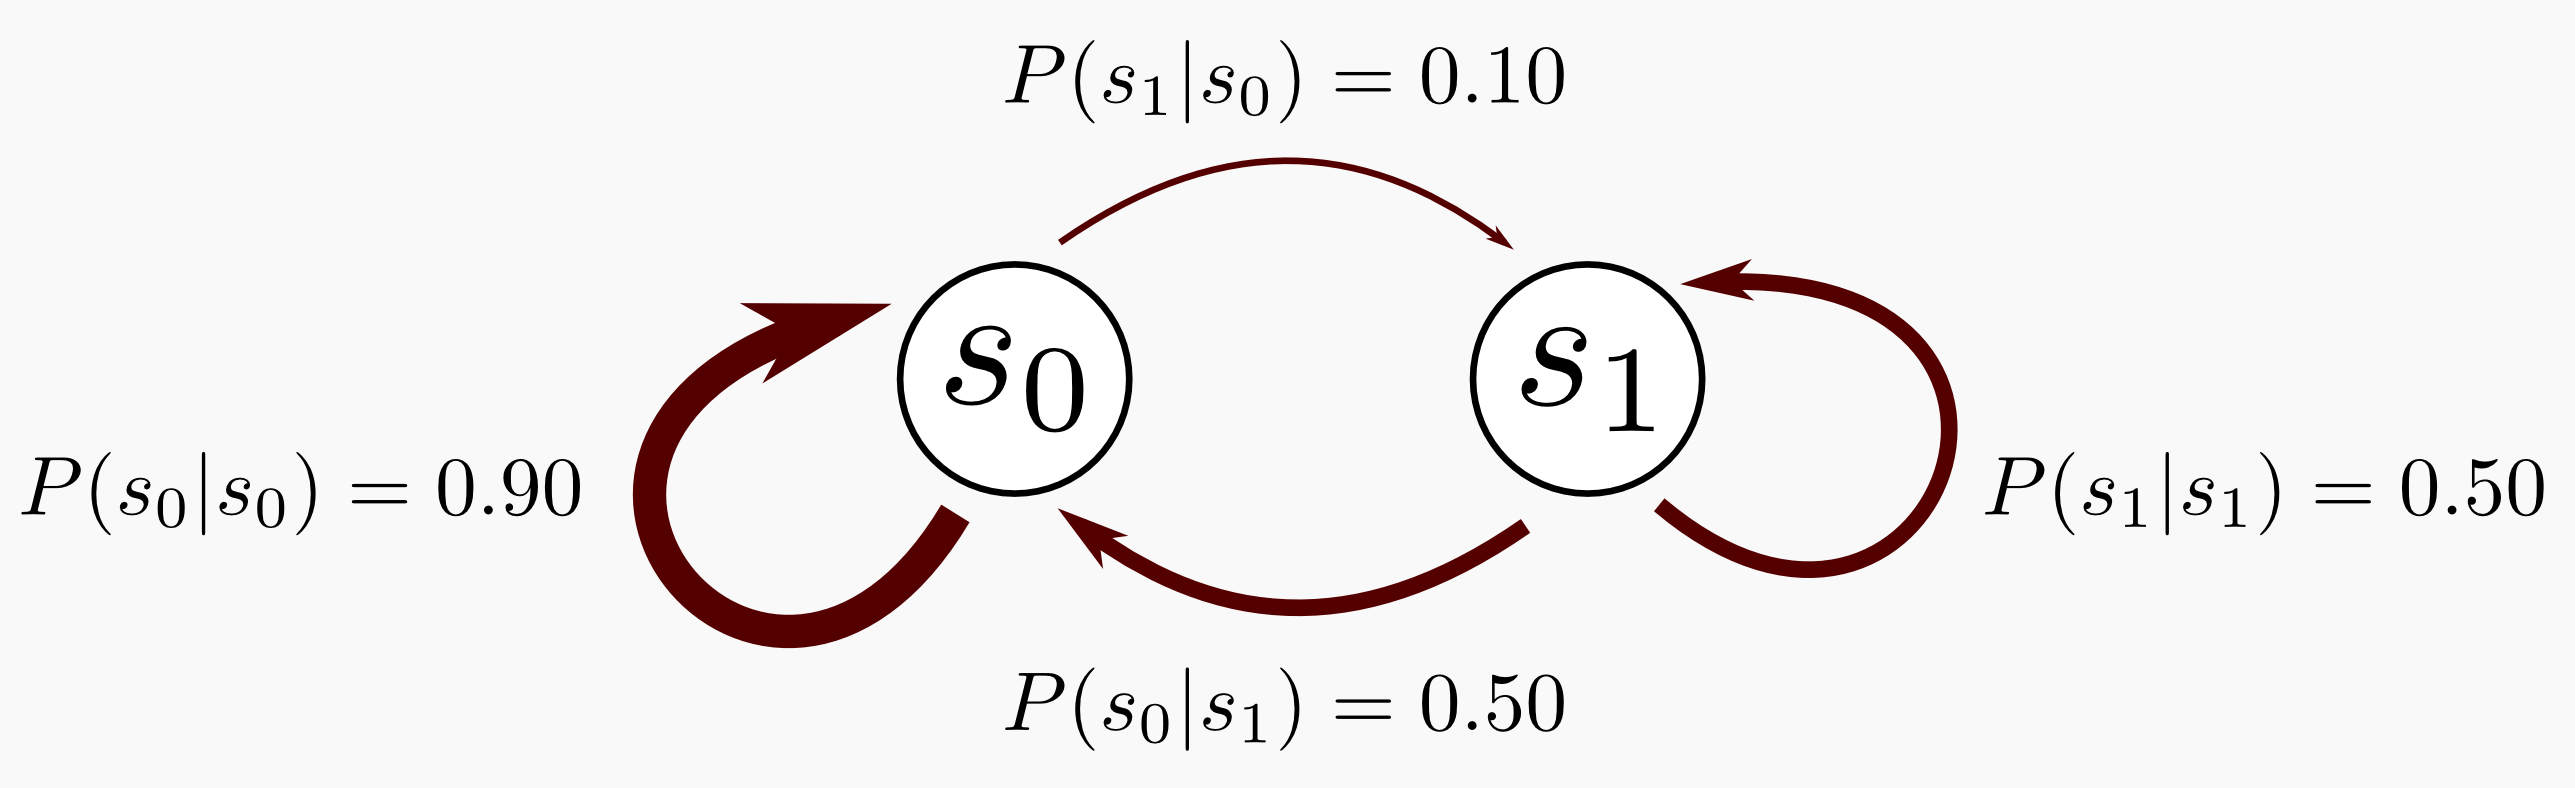 Simple Markov Chain